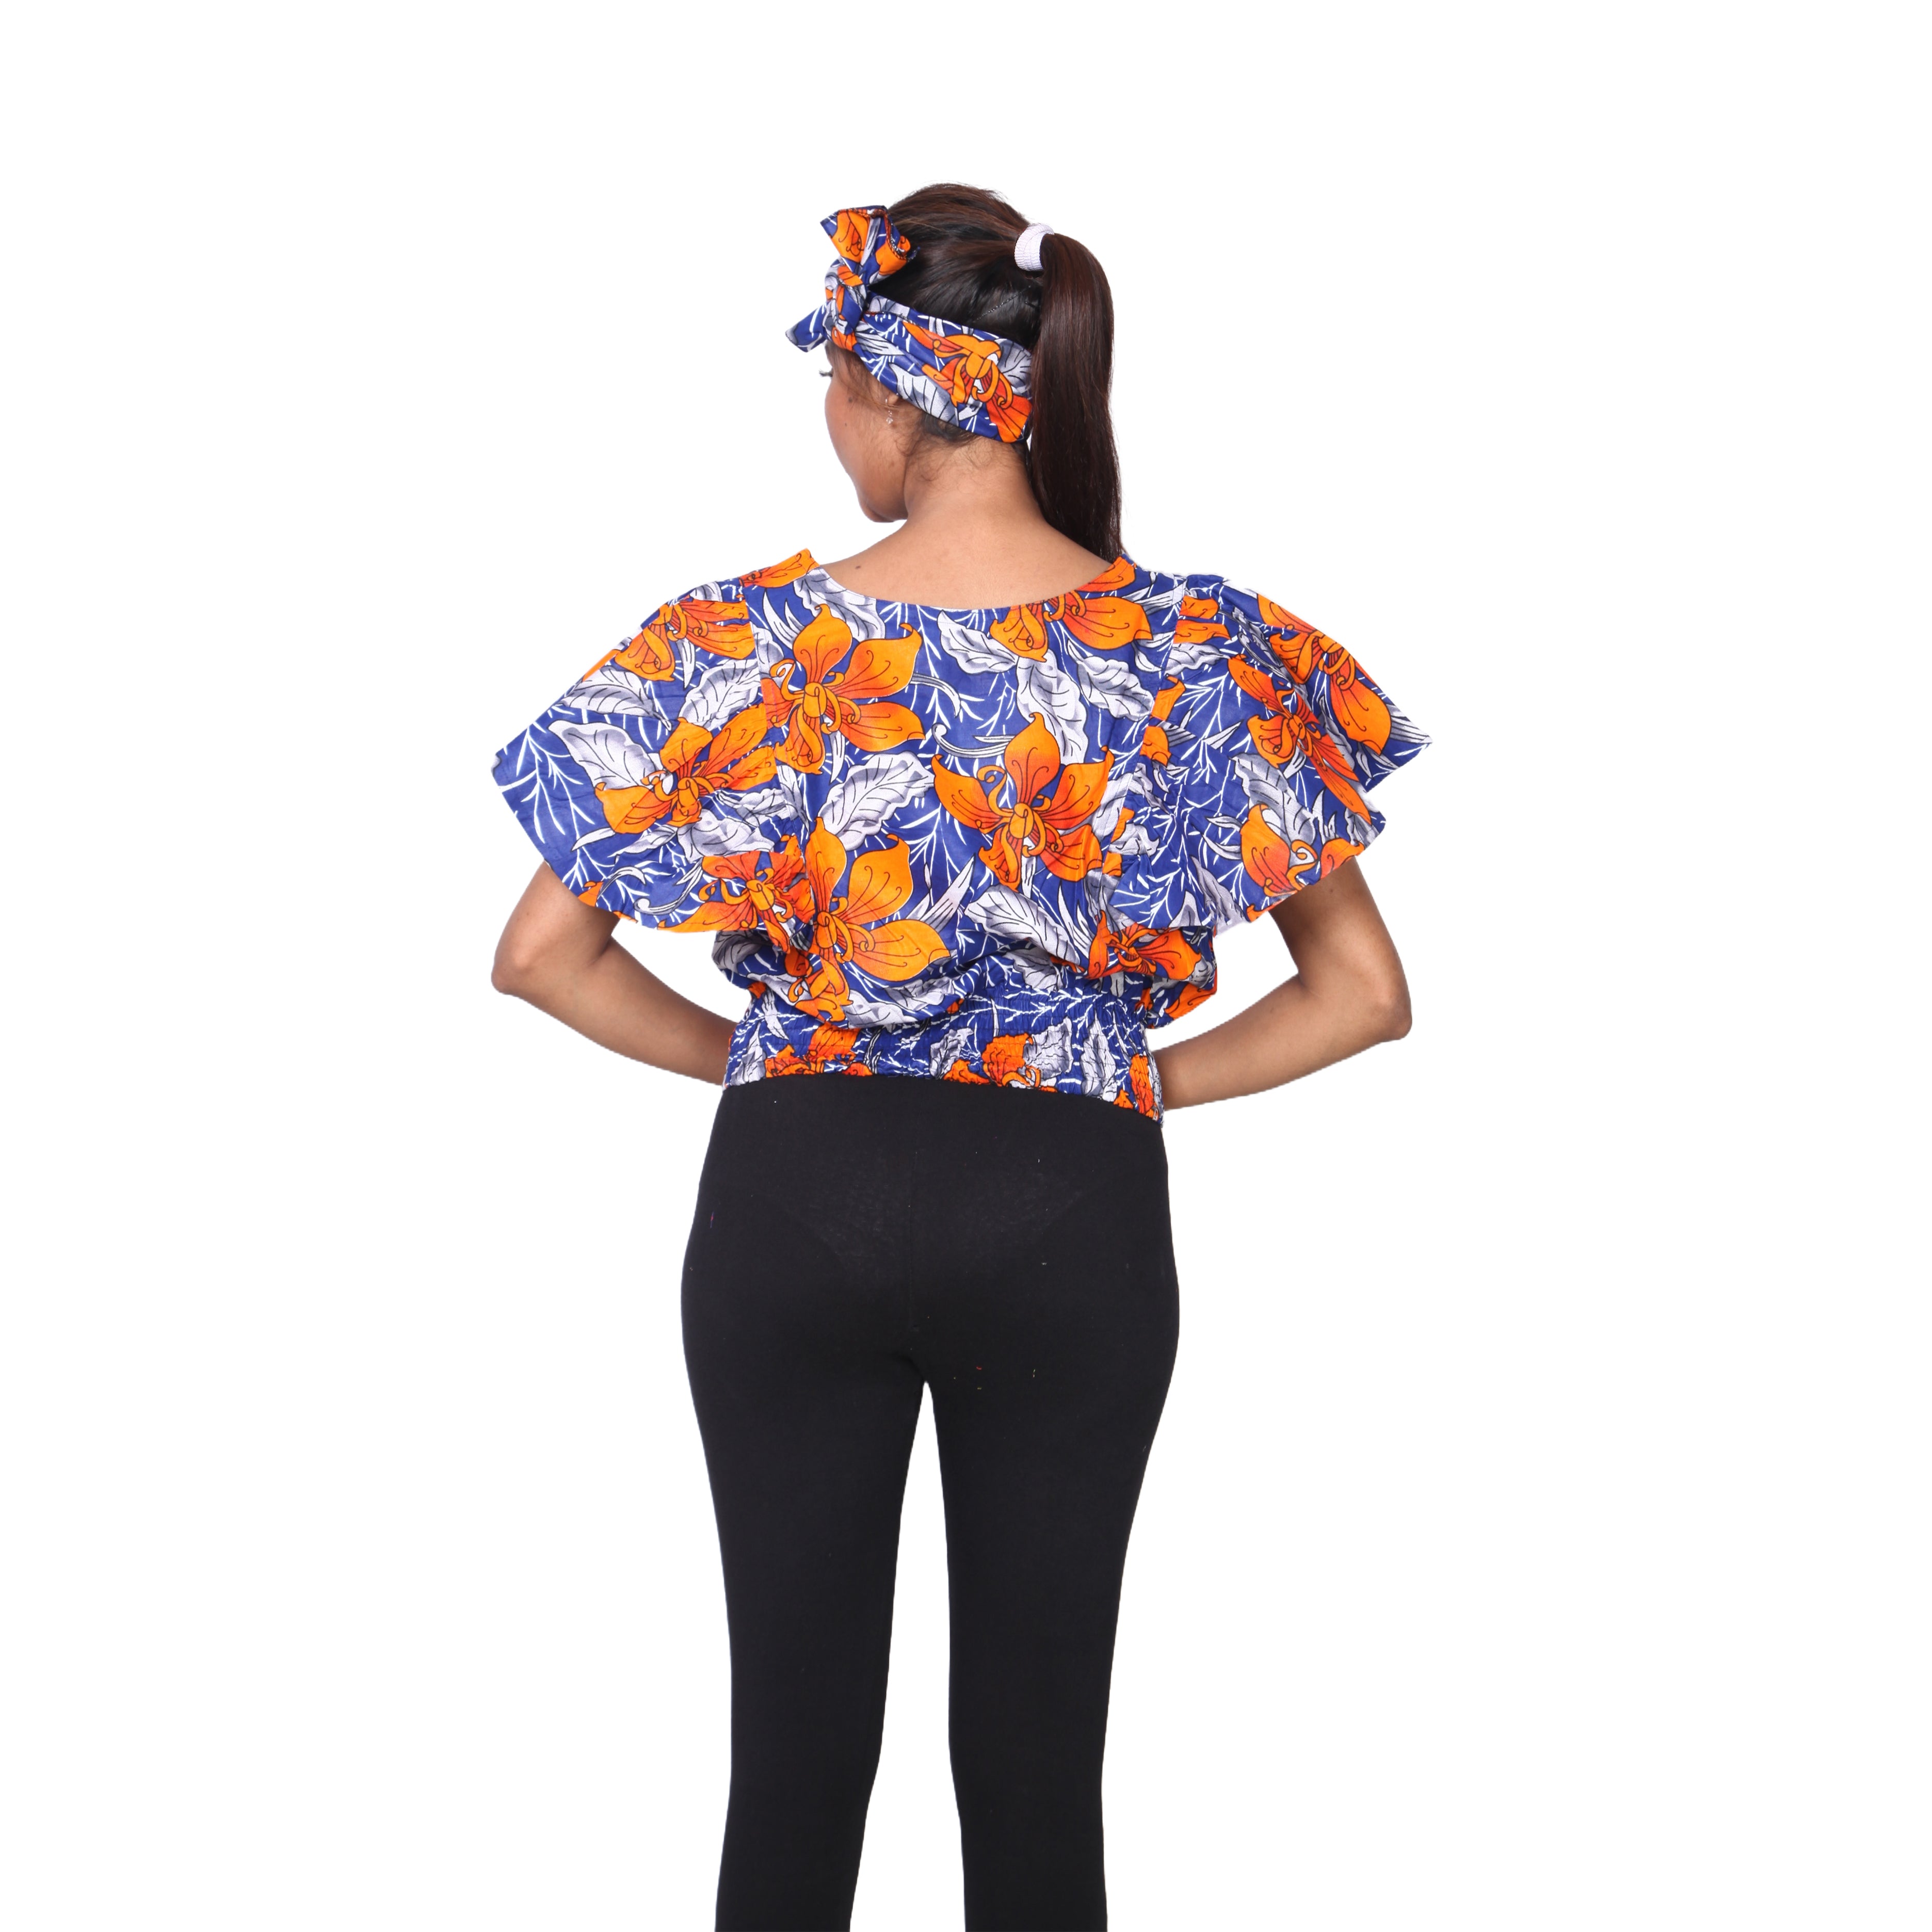 Women's African Print Short Sleeve Top -- FI-17